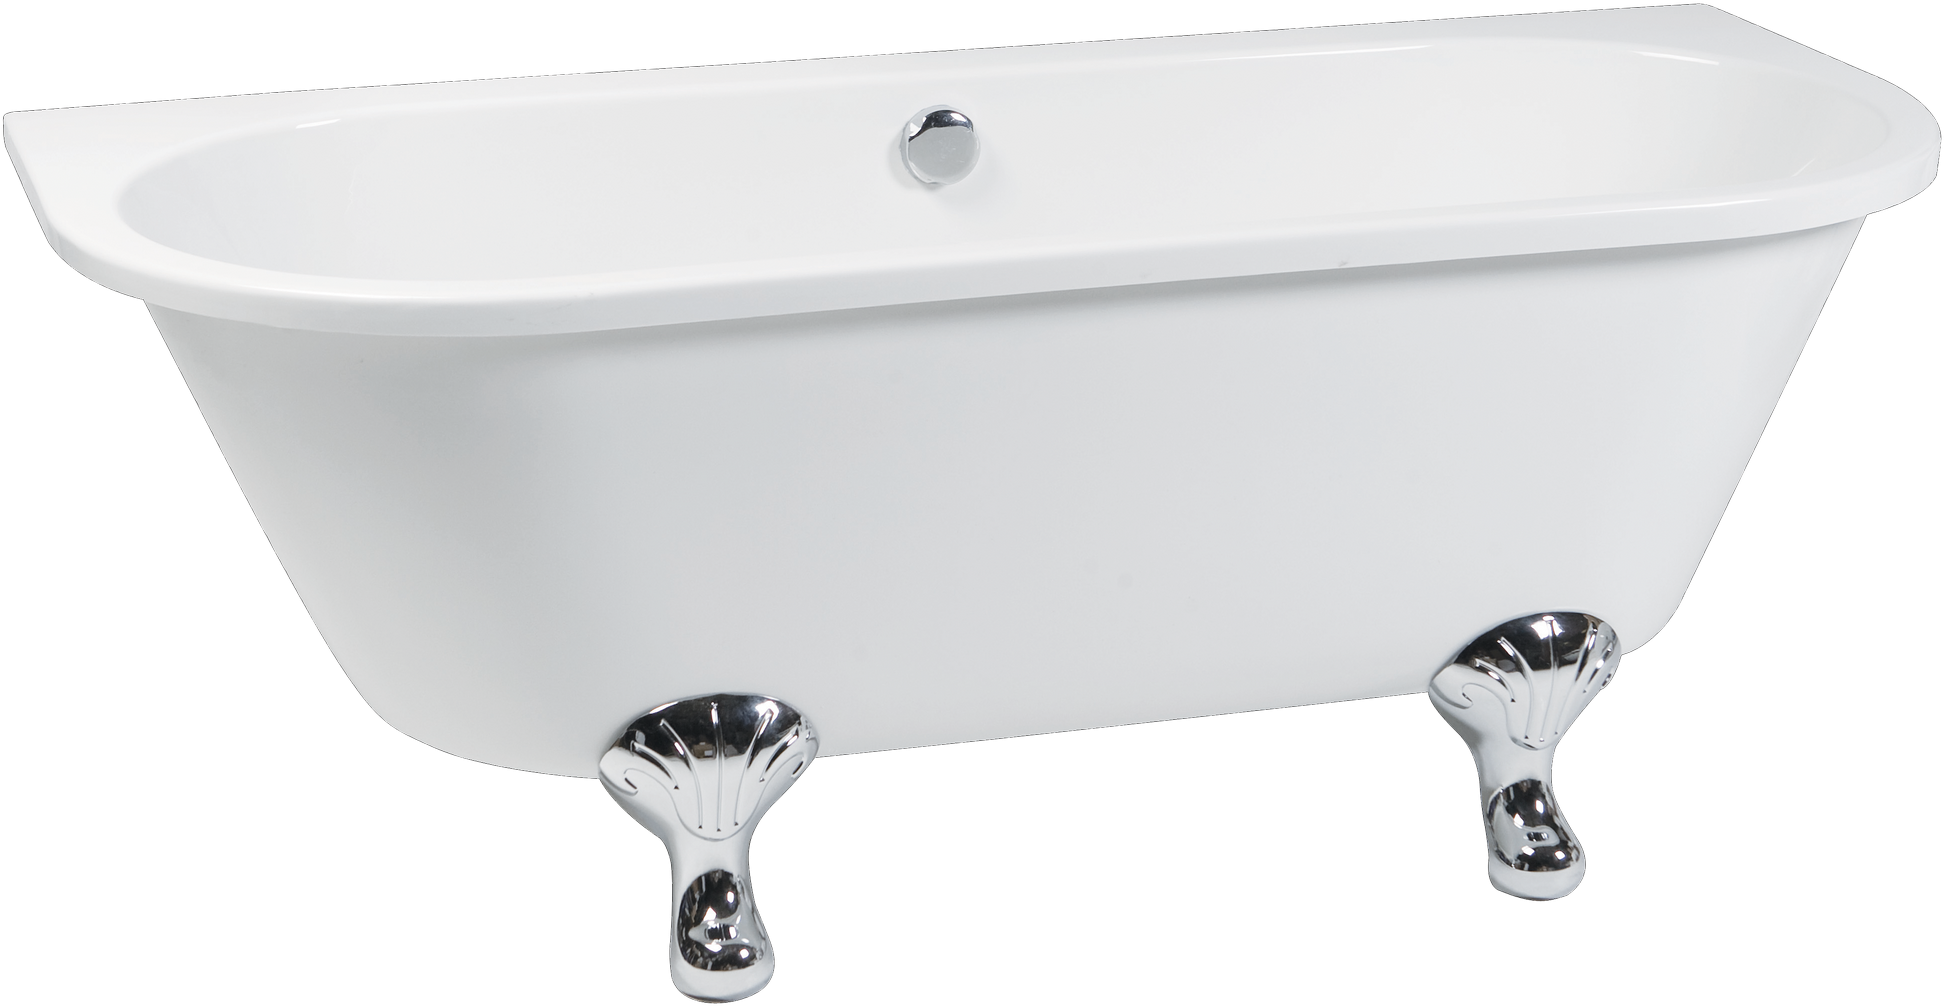 A White Bathtub With Chrome Legs